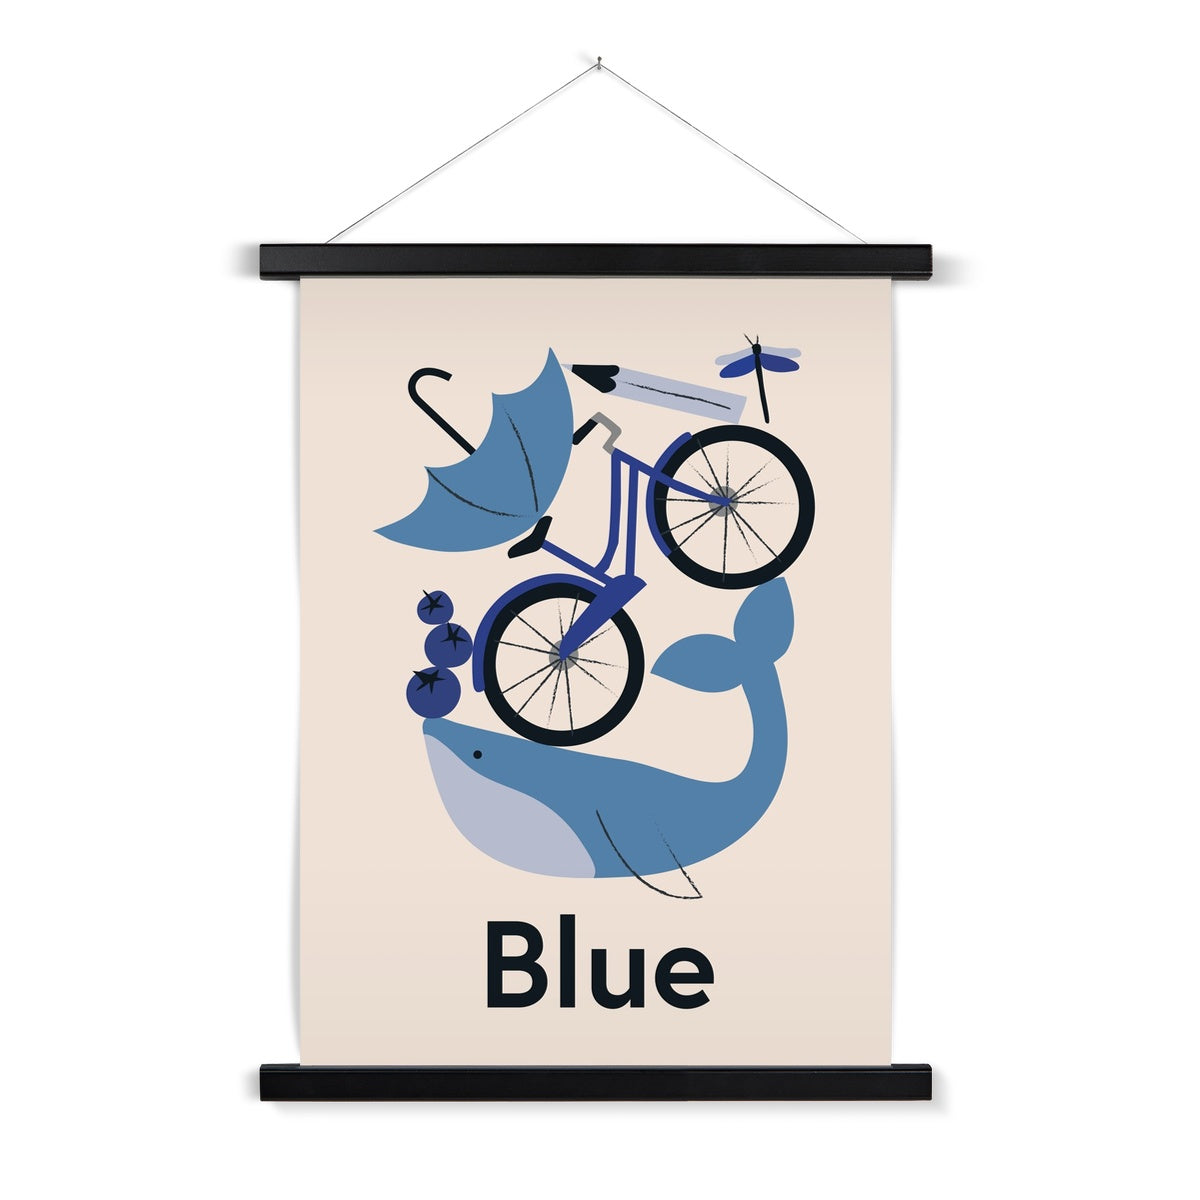 Favourite Colour Blue Fine Art Print with Hanger